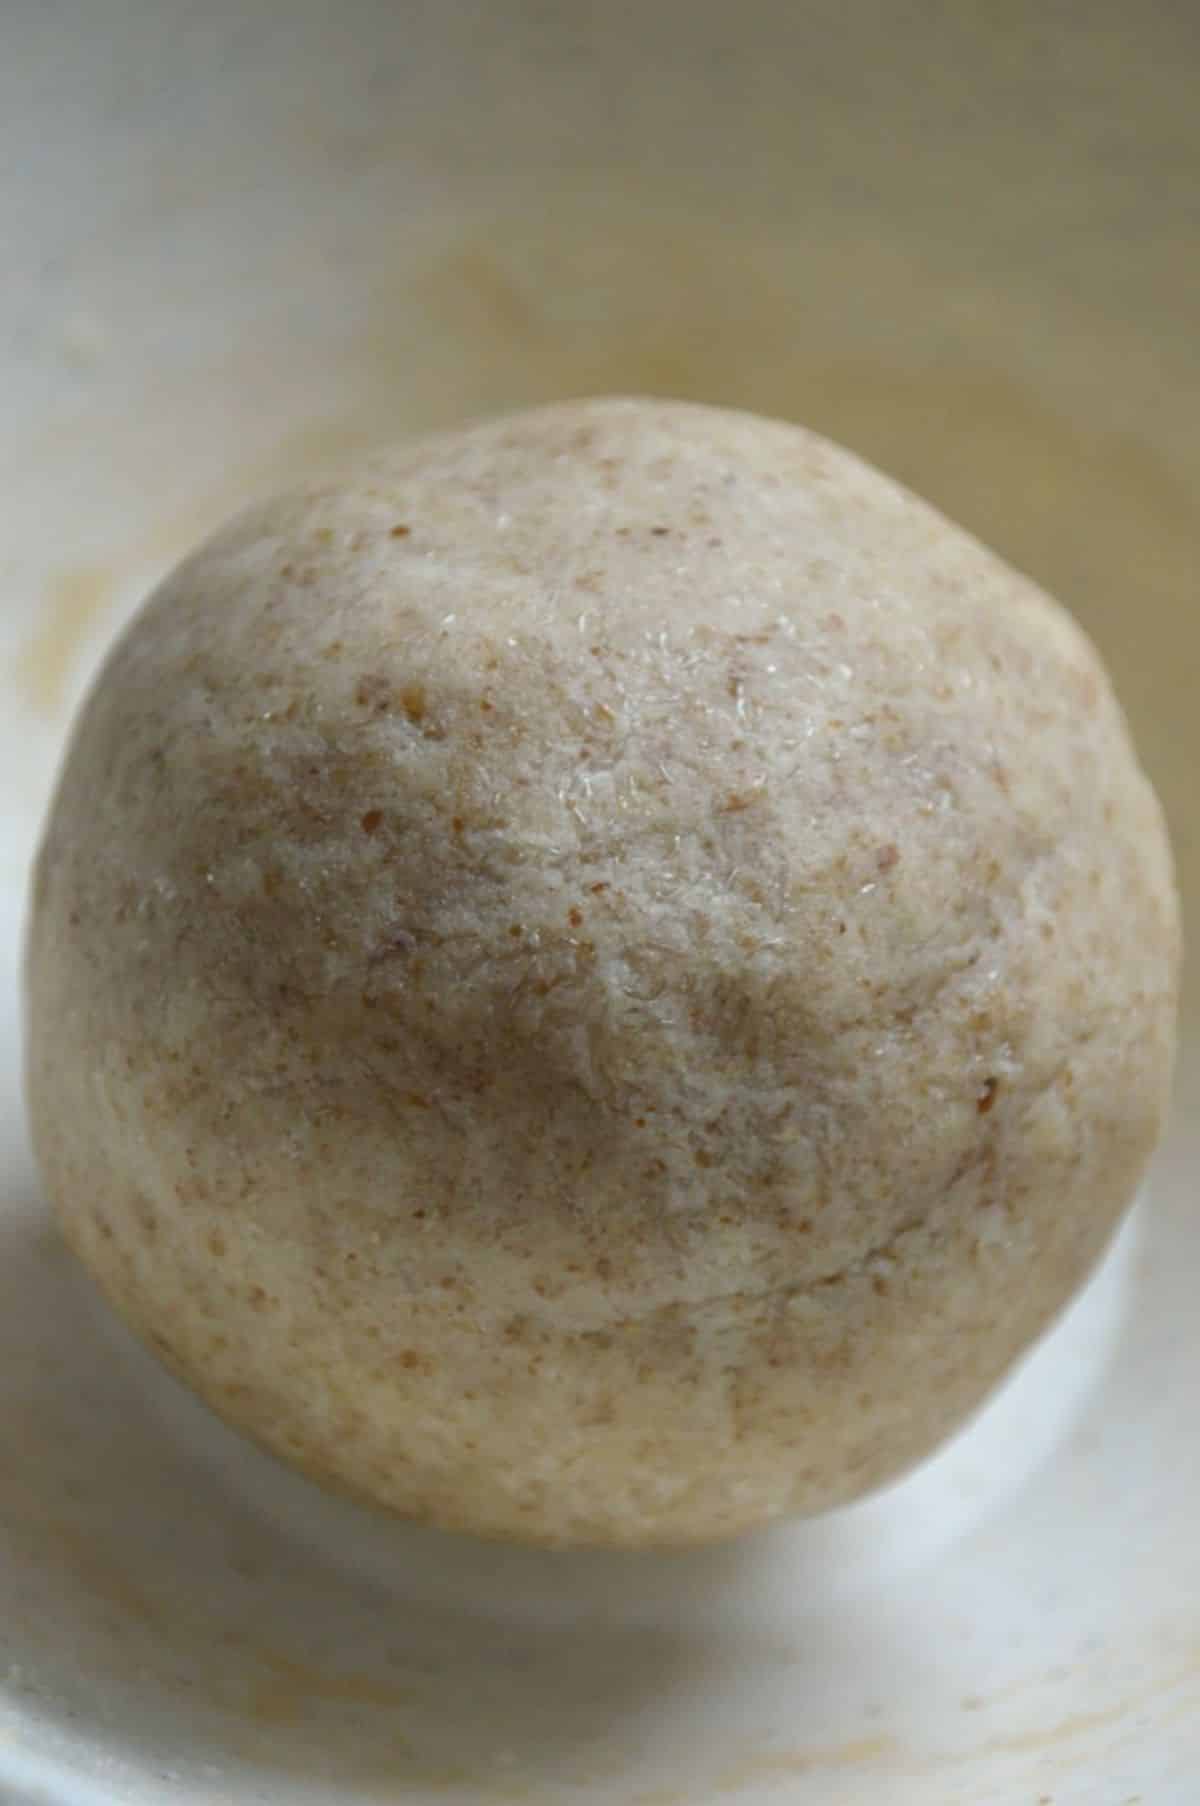 A ball of keto dough in a bowl.